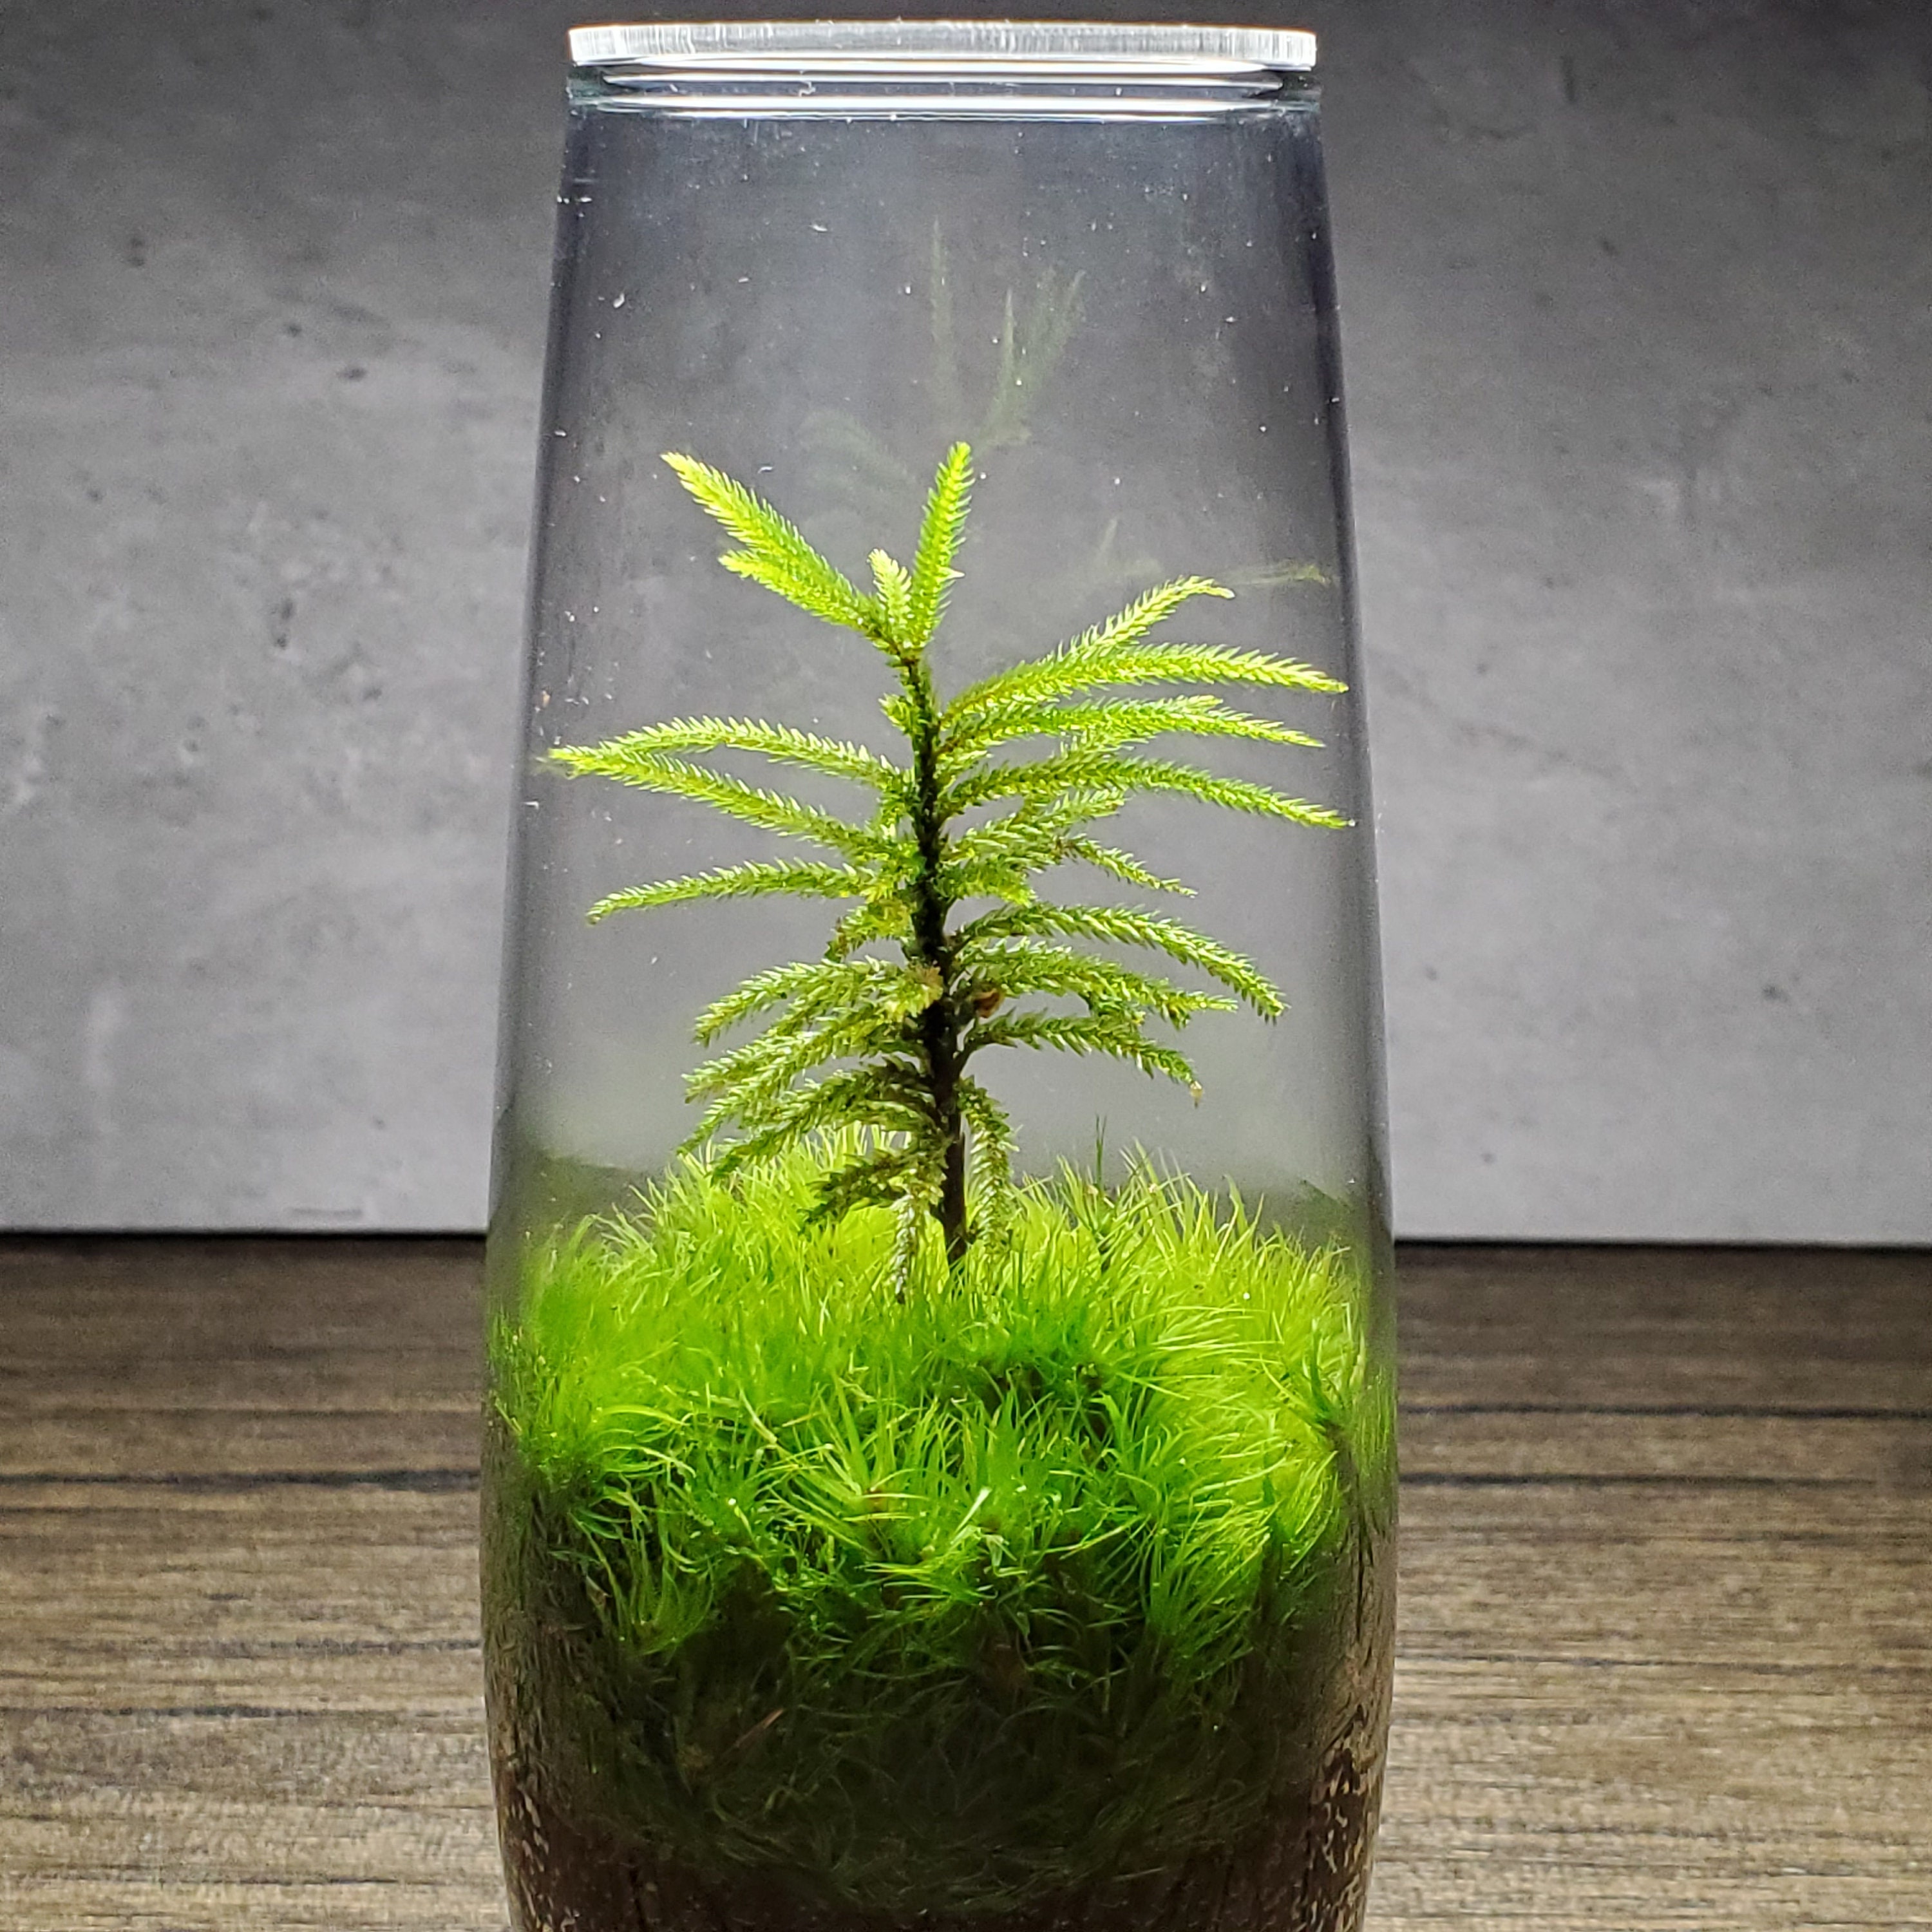 Live Moss Terrarium Glass Vase 10 Tall, 7 Diameter 